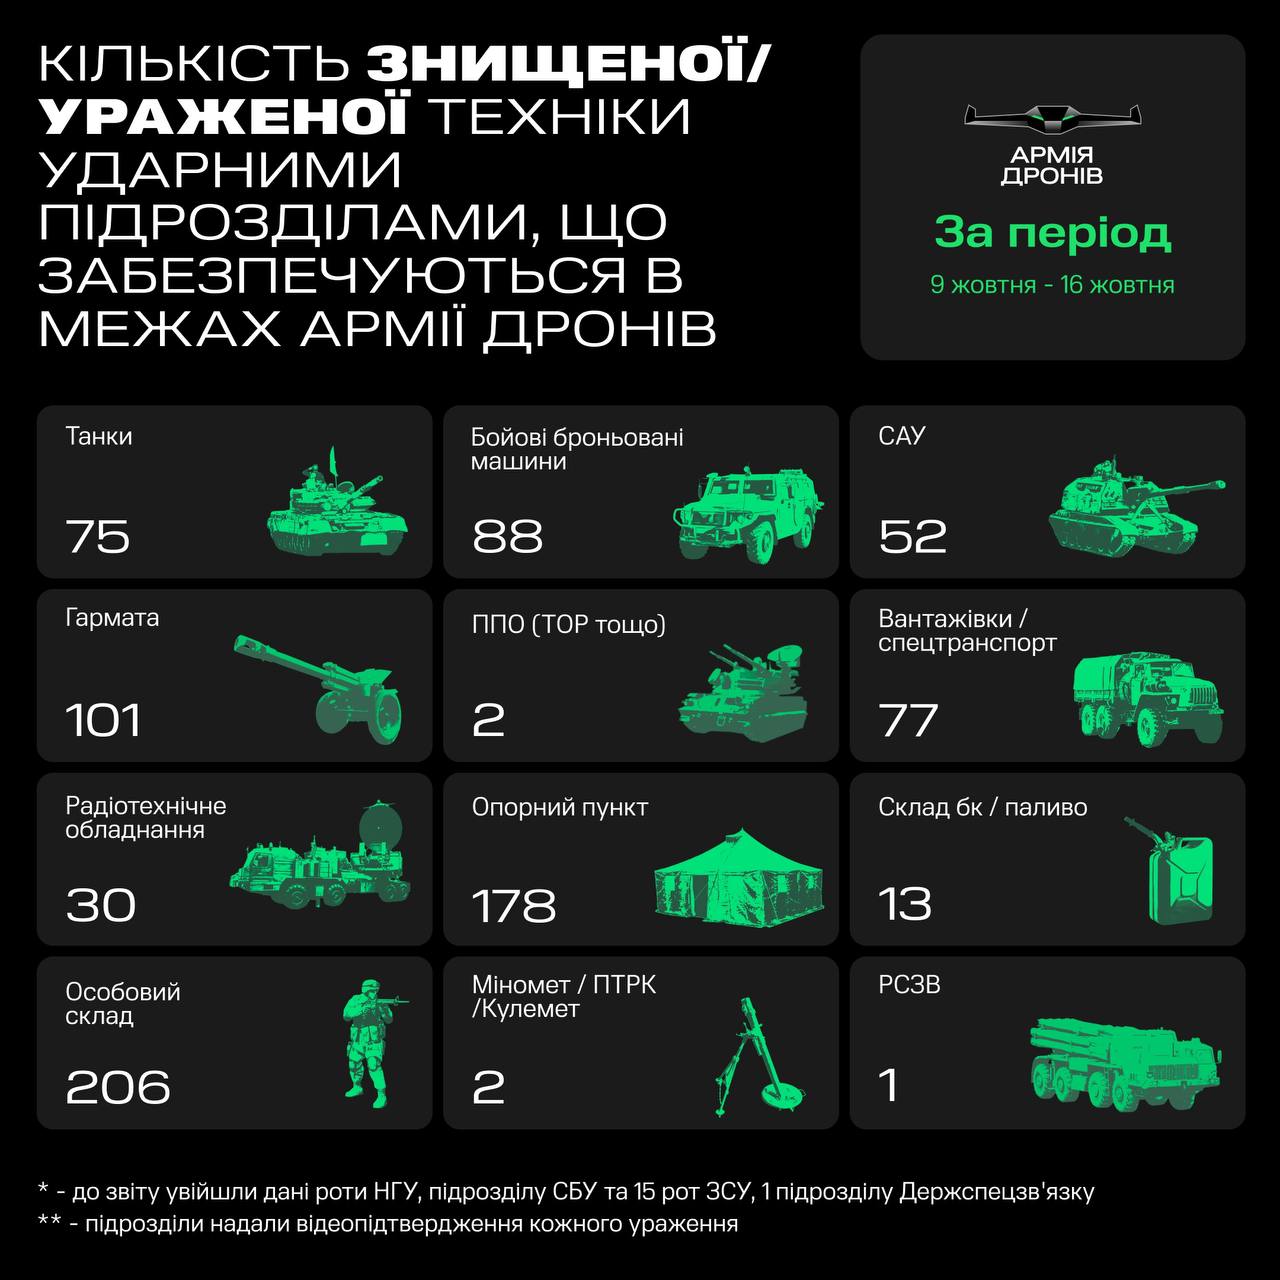 Армия дронов за неделю поразила 428 единиц вражеской техники, - Федоров 01